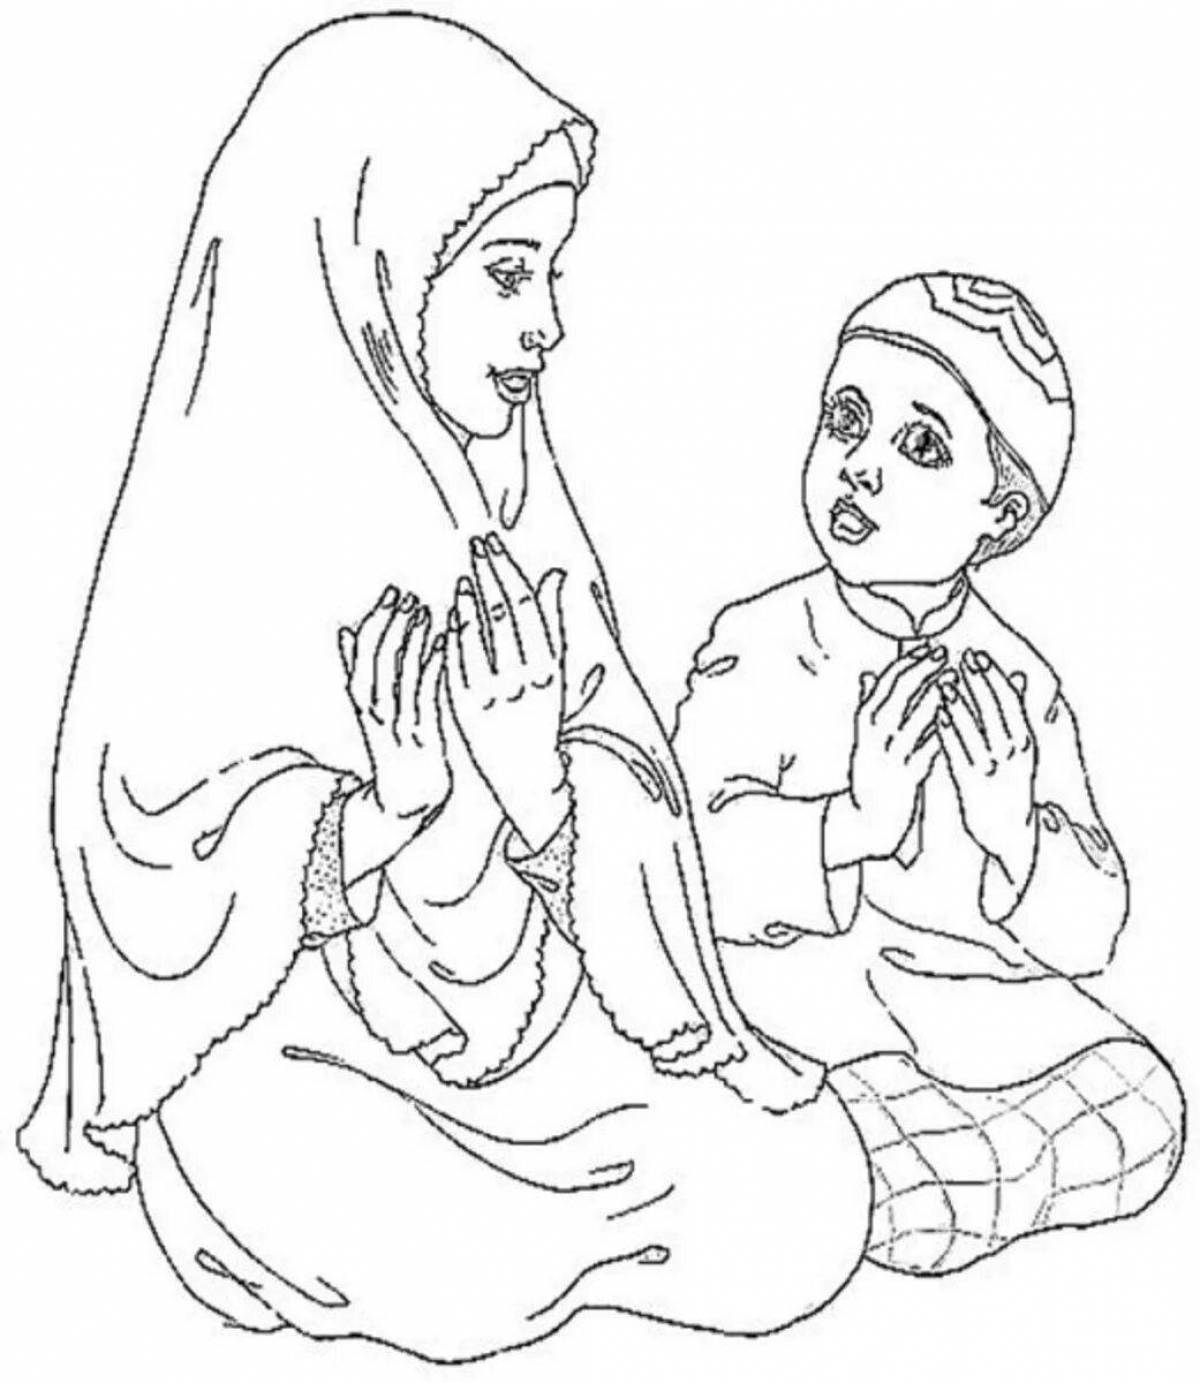 Peaceful muslim coloring book